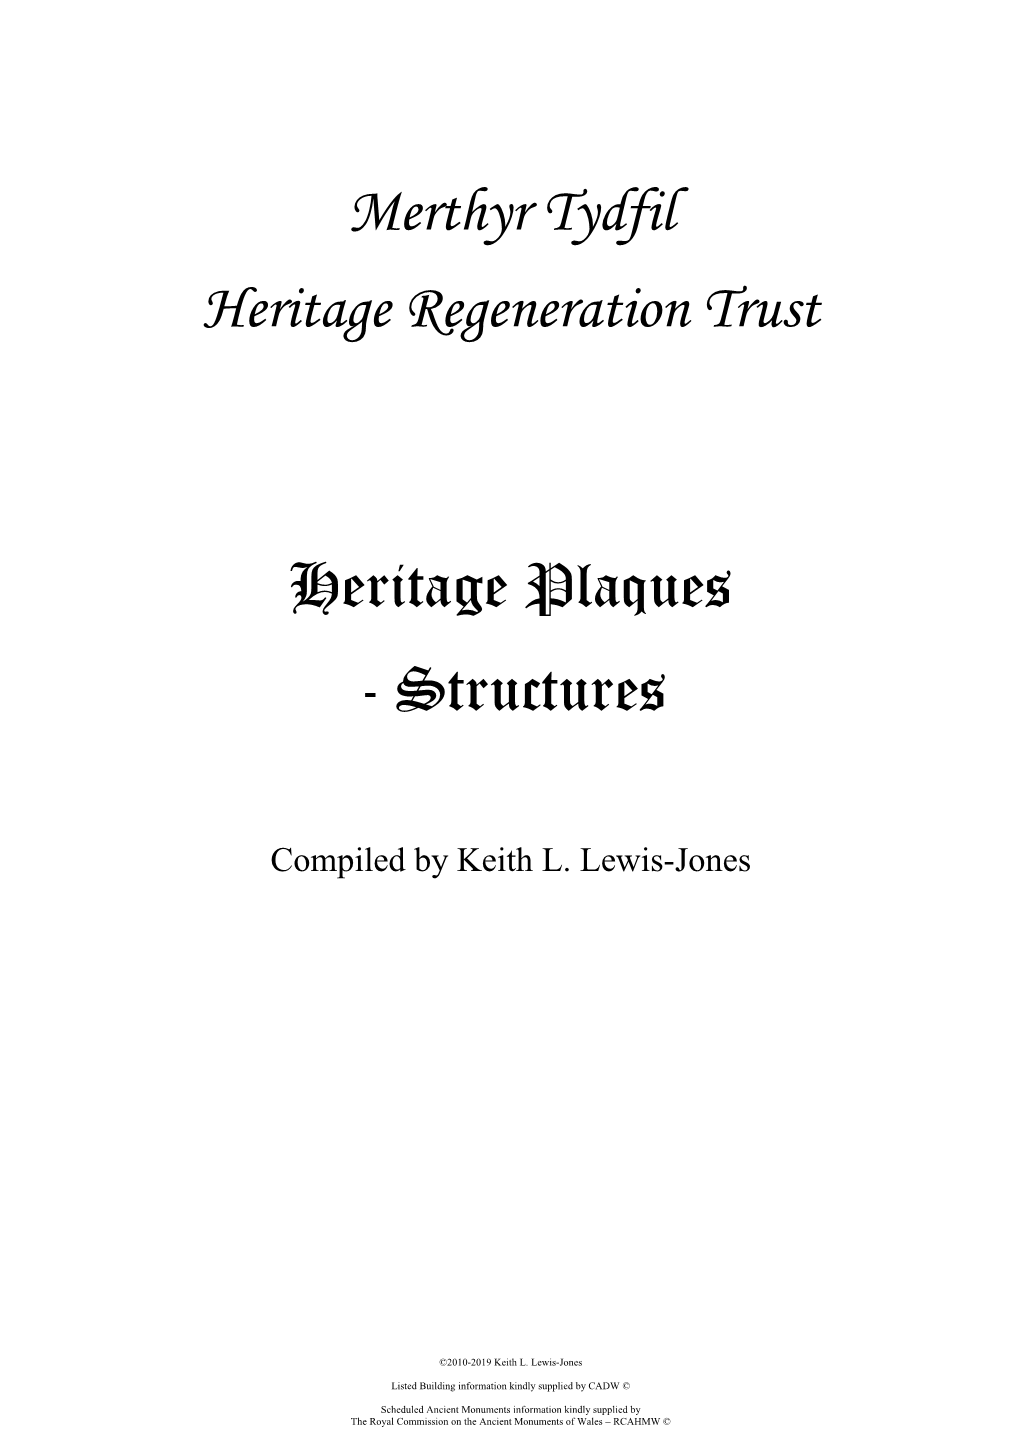 Merthyr Tydfil Heritage Regeneration Trust Heritage Plaques